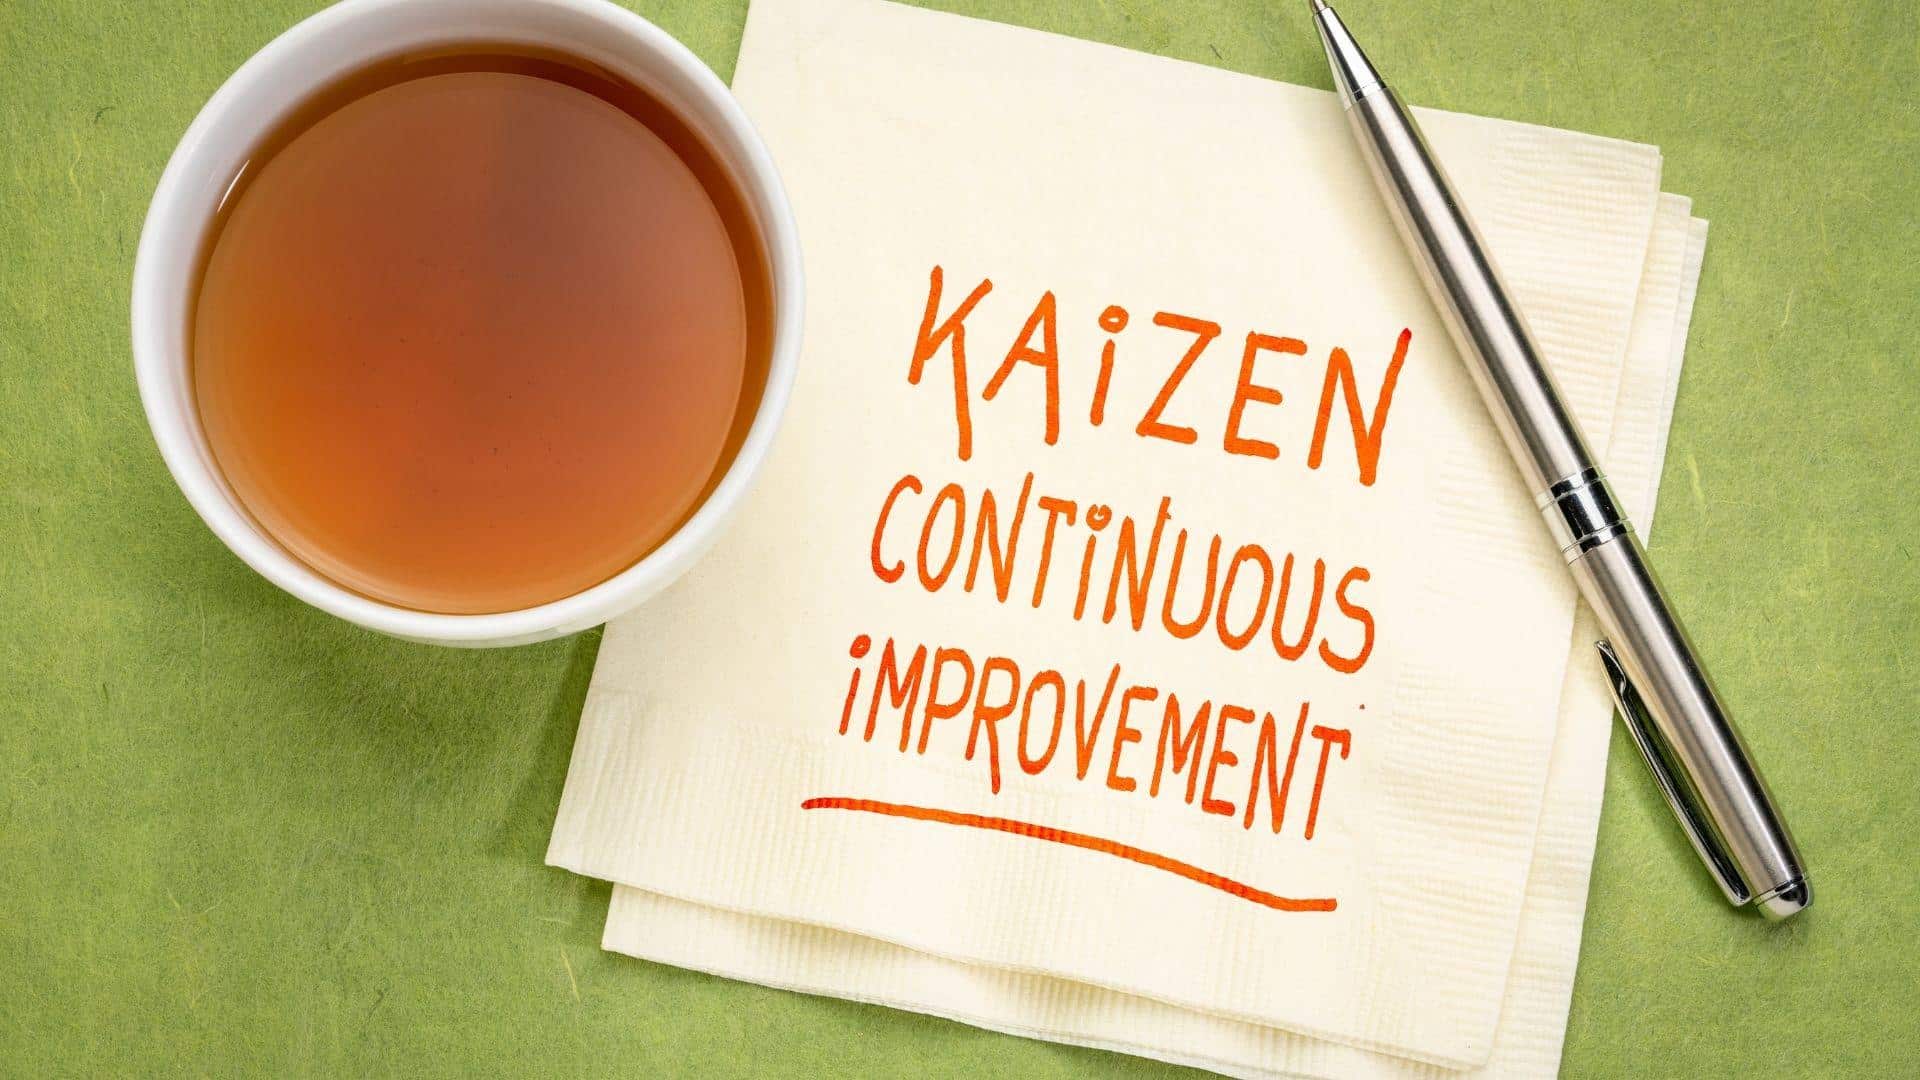 kaizen continuous improvement